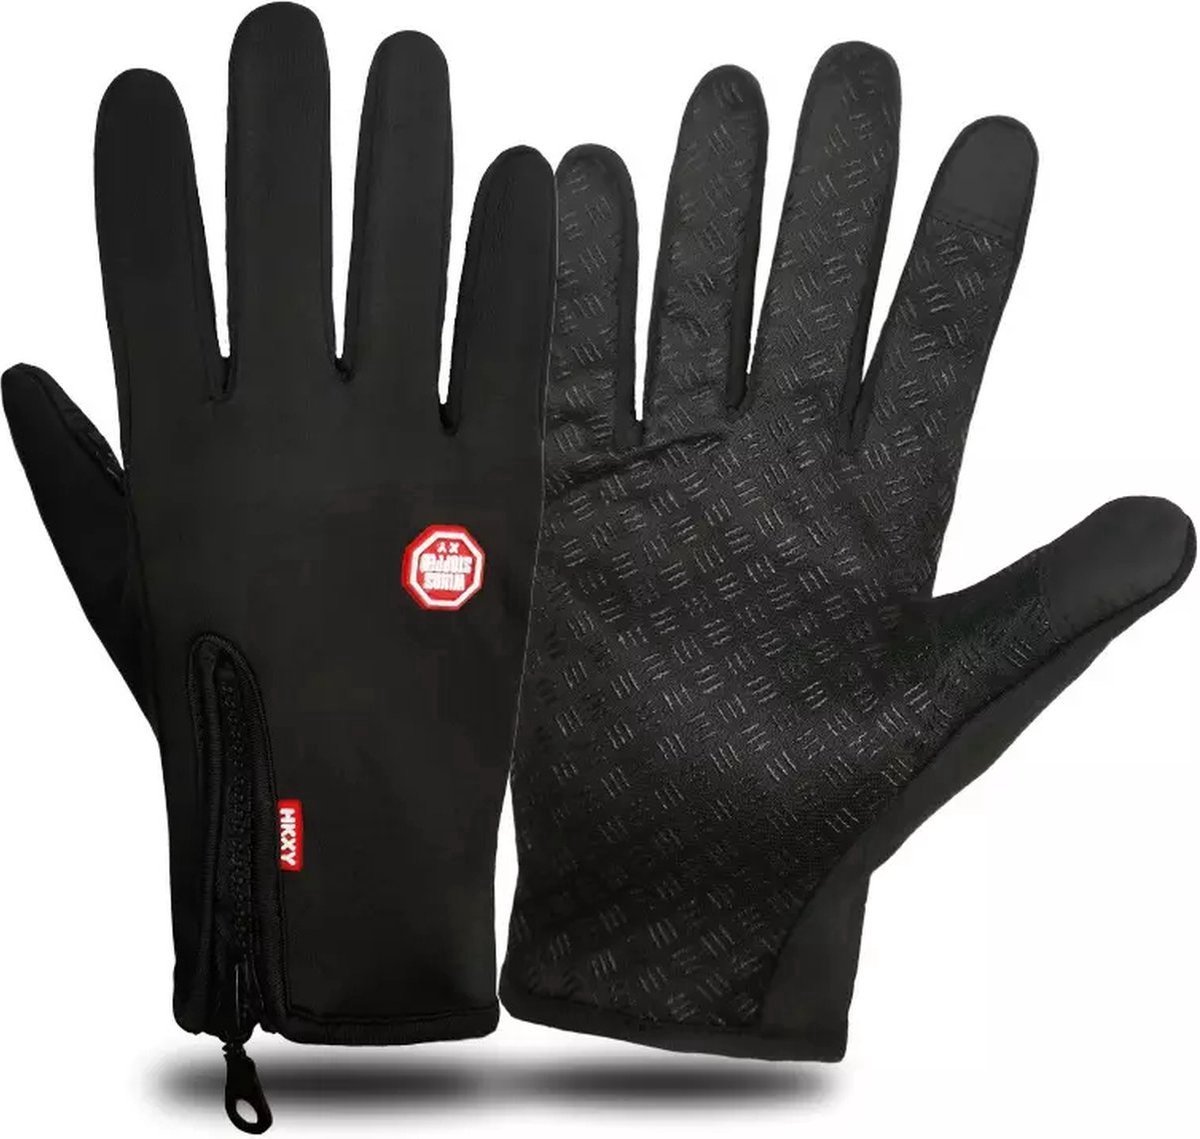 *** Handschoenen Warm Tech - Touchscreen - Waterdicht - Fleece - Unisex - Zwart - Maat XL - van Heble® ***